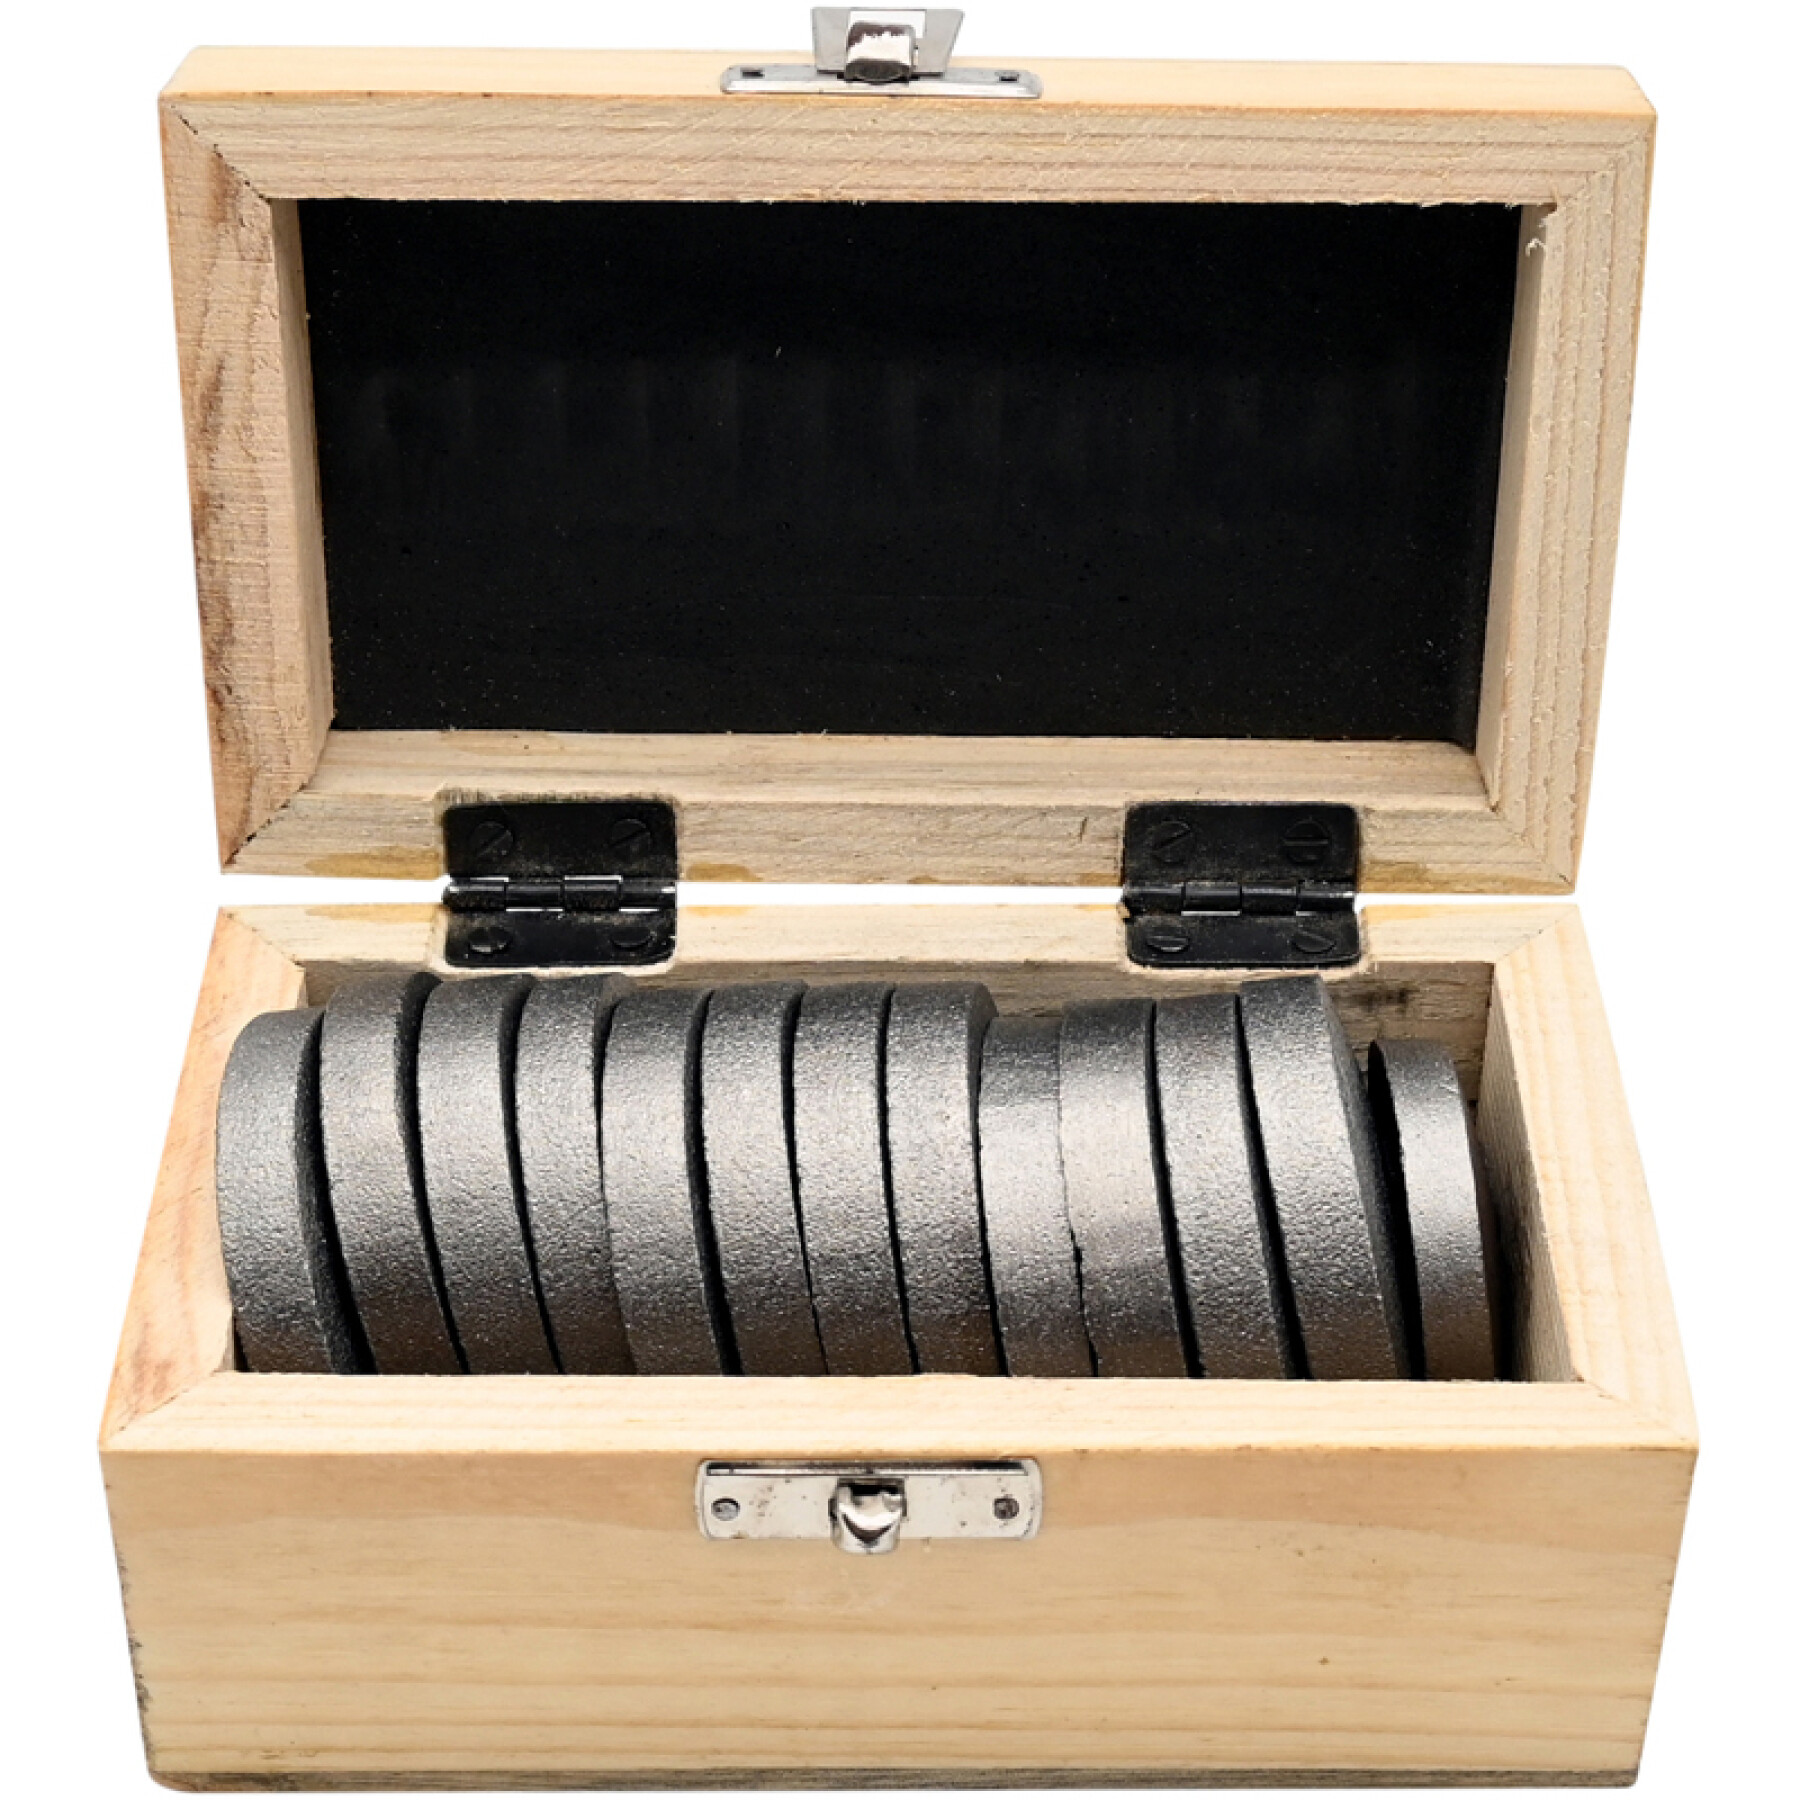 Caja de almacenamiento de juegos de habilidad con 12 barajas + 1 máster de hierro fundido AtouSport